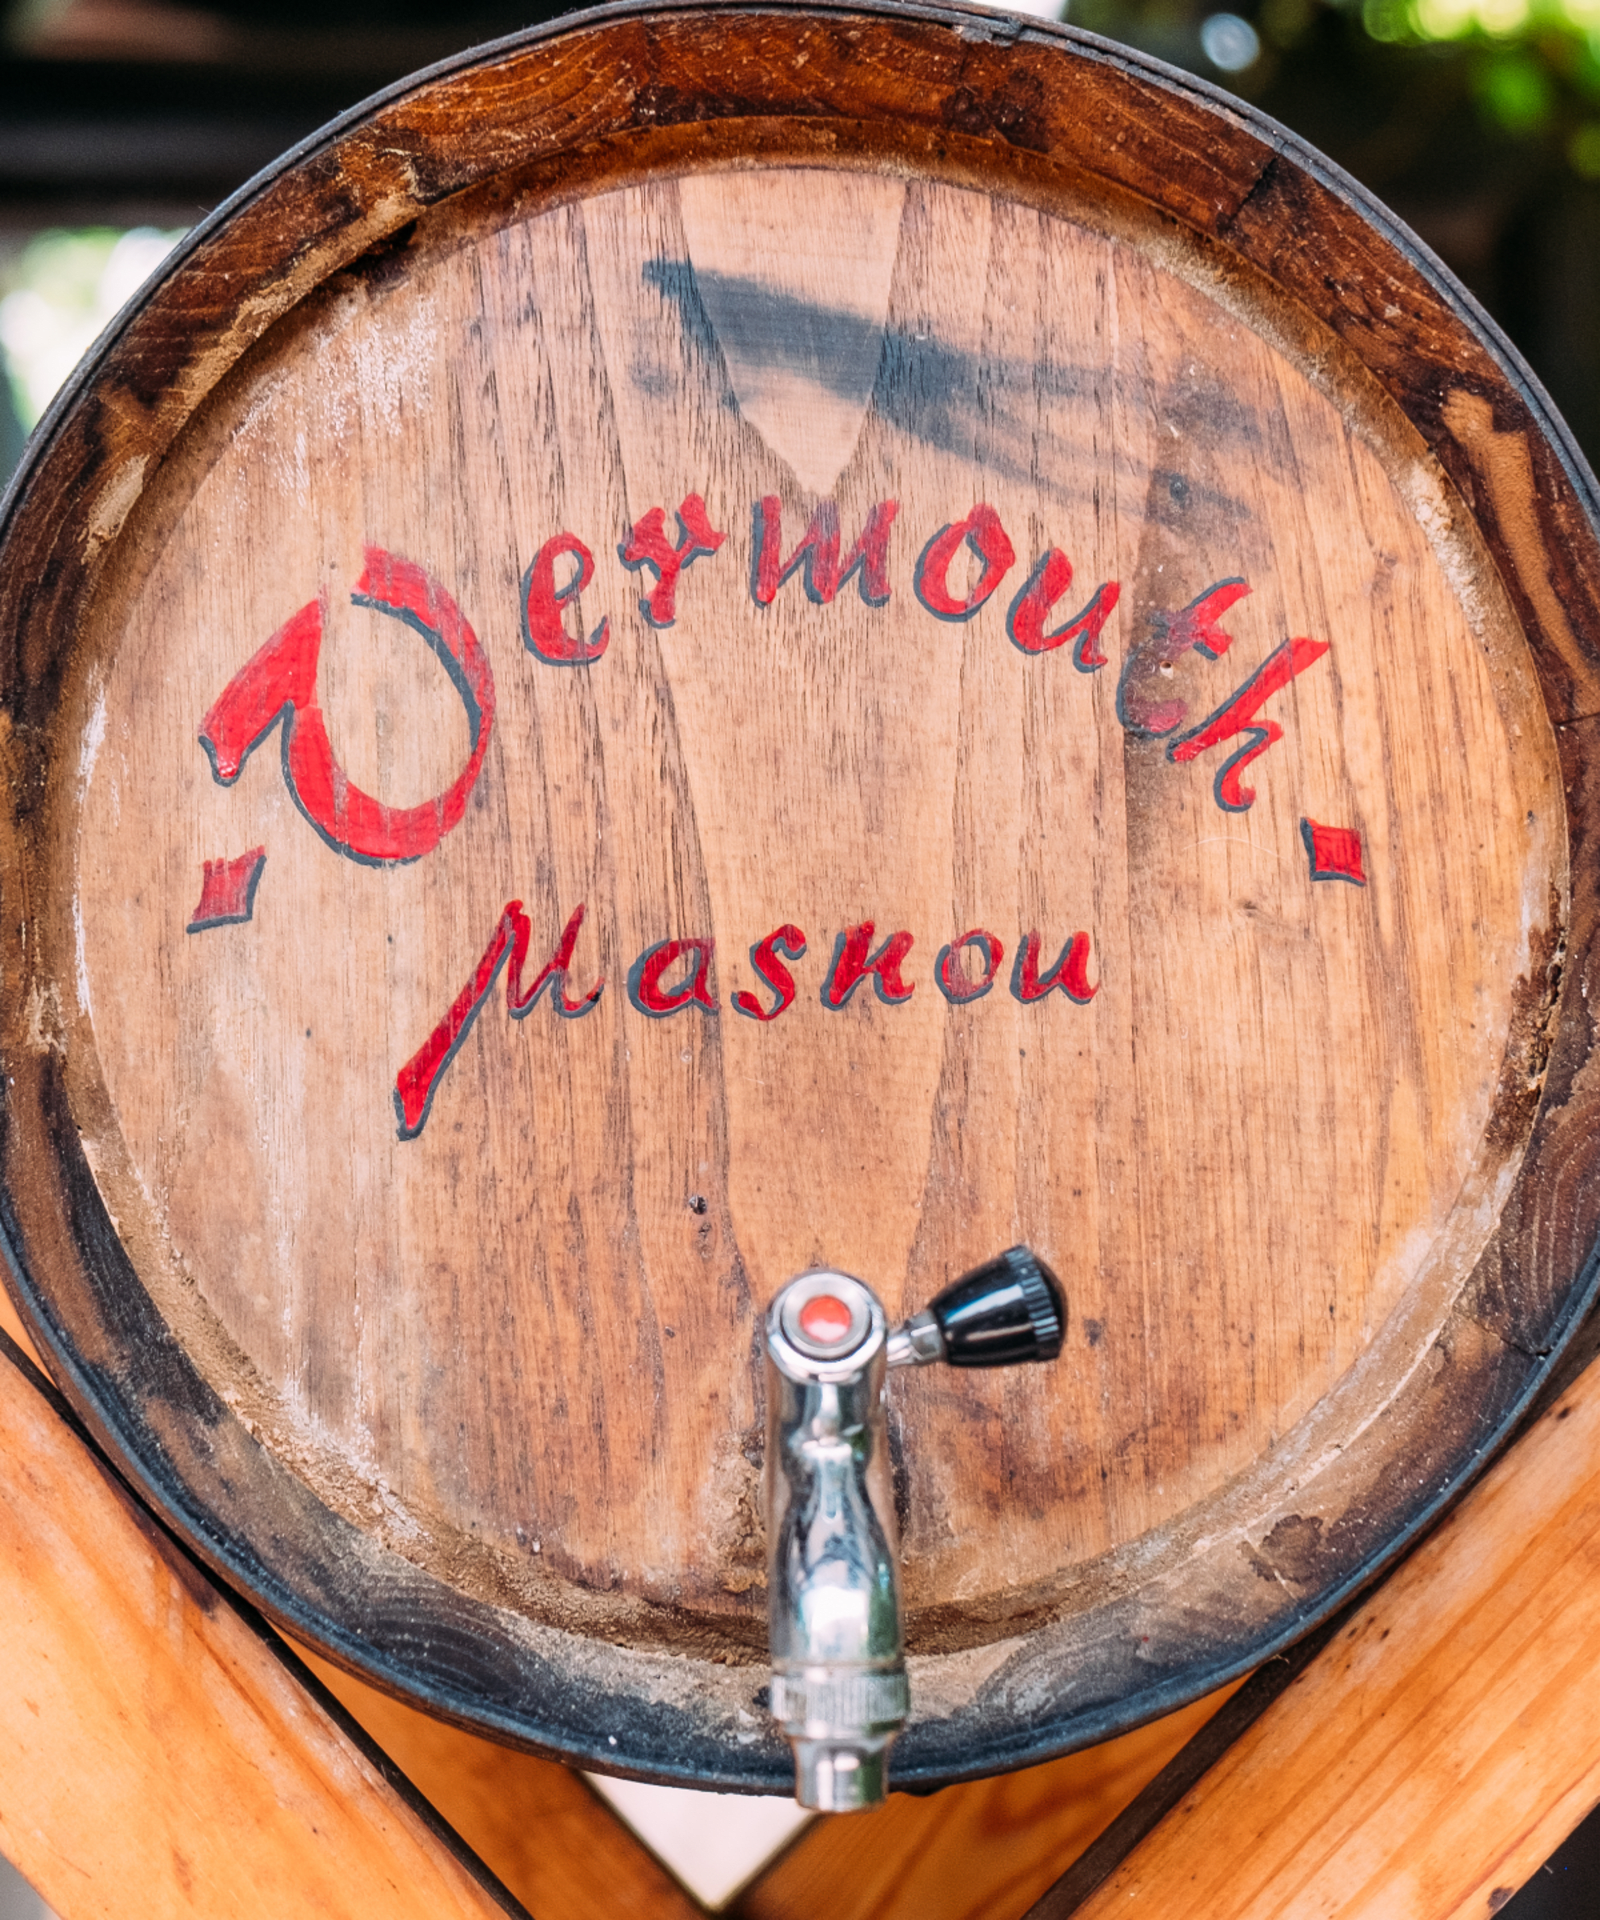 A barrel of vermouth